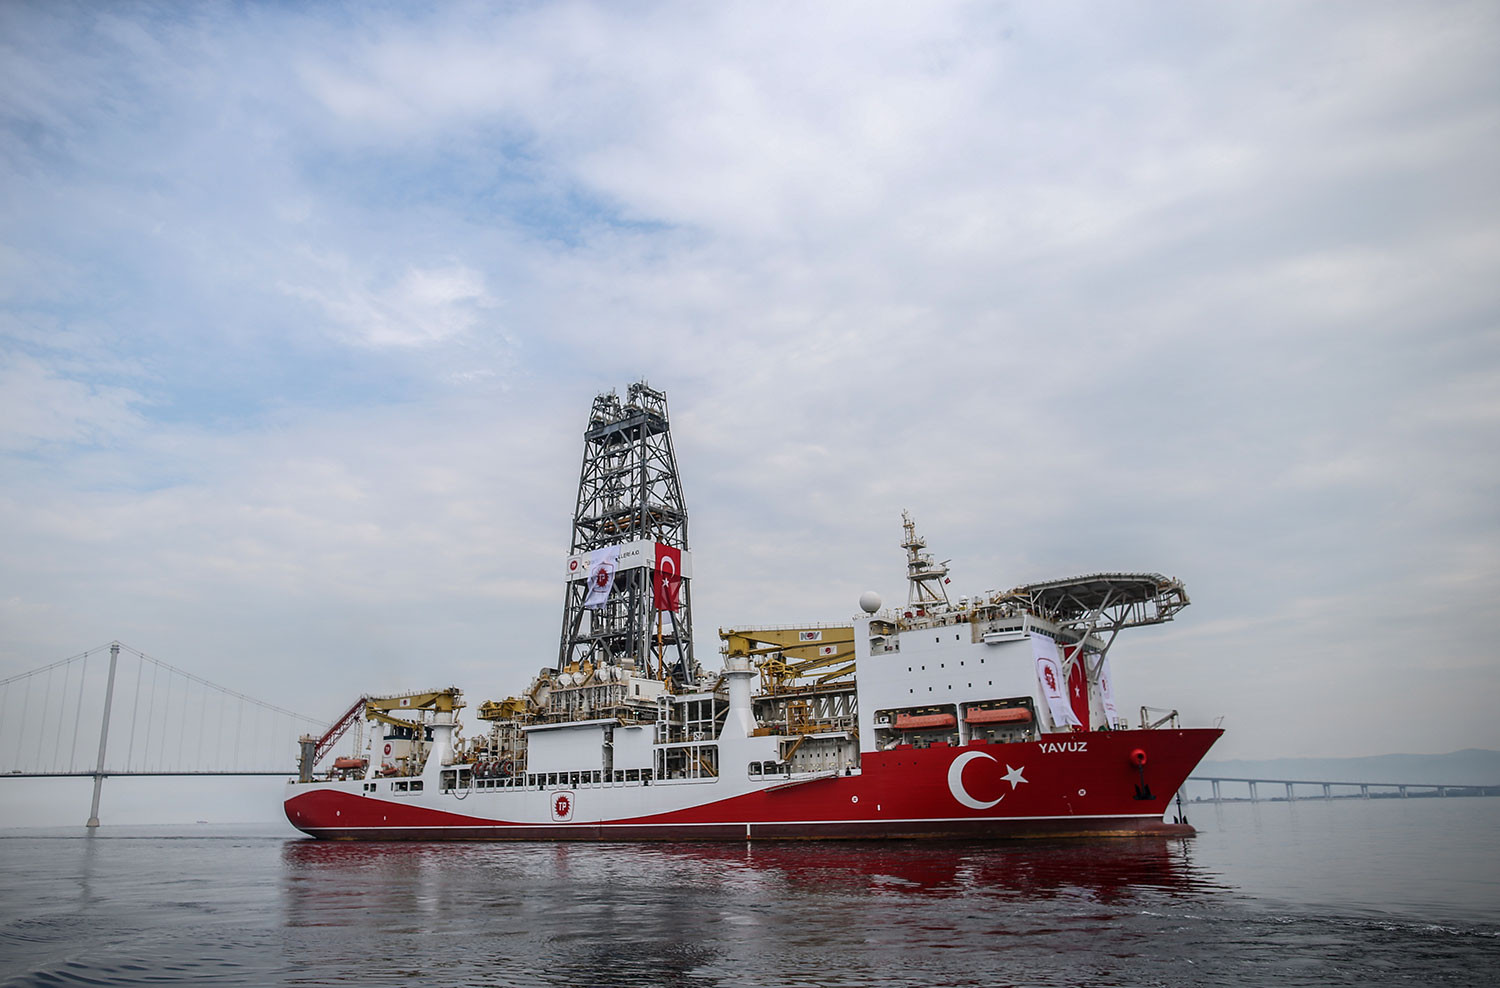 Τουρκία: Πειρατική ενέργεια σε πλοίο στην Κυπριακή ΑΟΖ